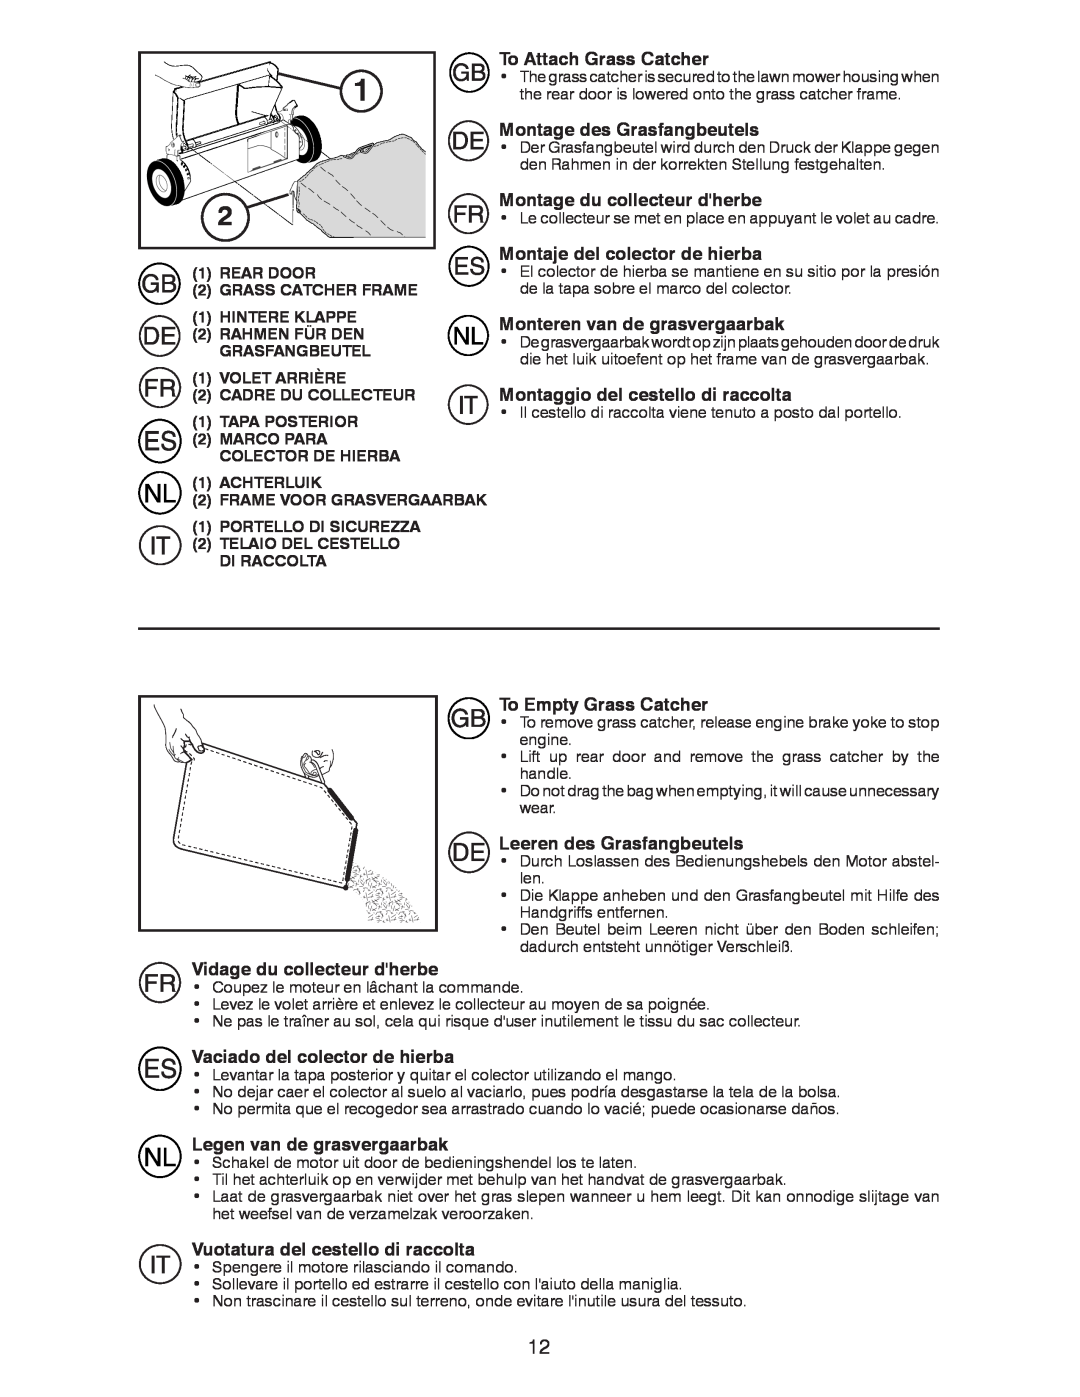 Husqvarna R52SVL instruction manual To Attach Grass Catcher, Montage des Grasfangbeutels, Montage du collecteur dherbe 